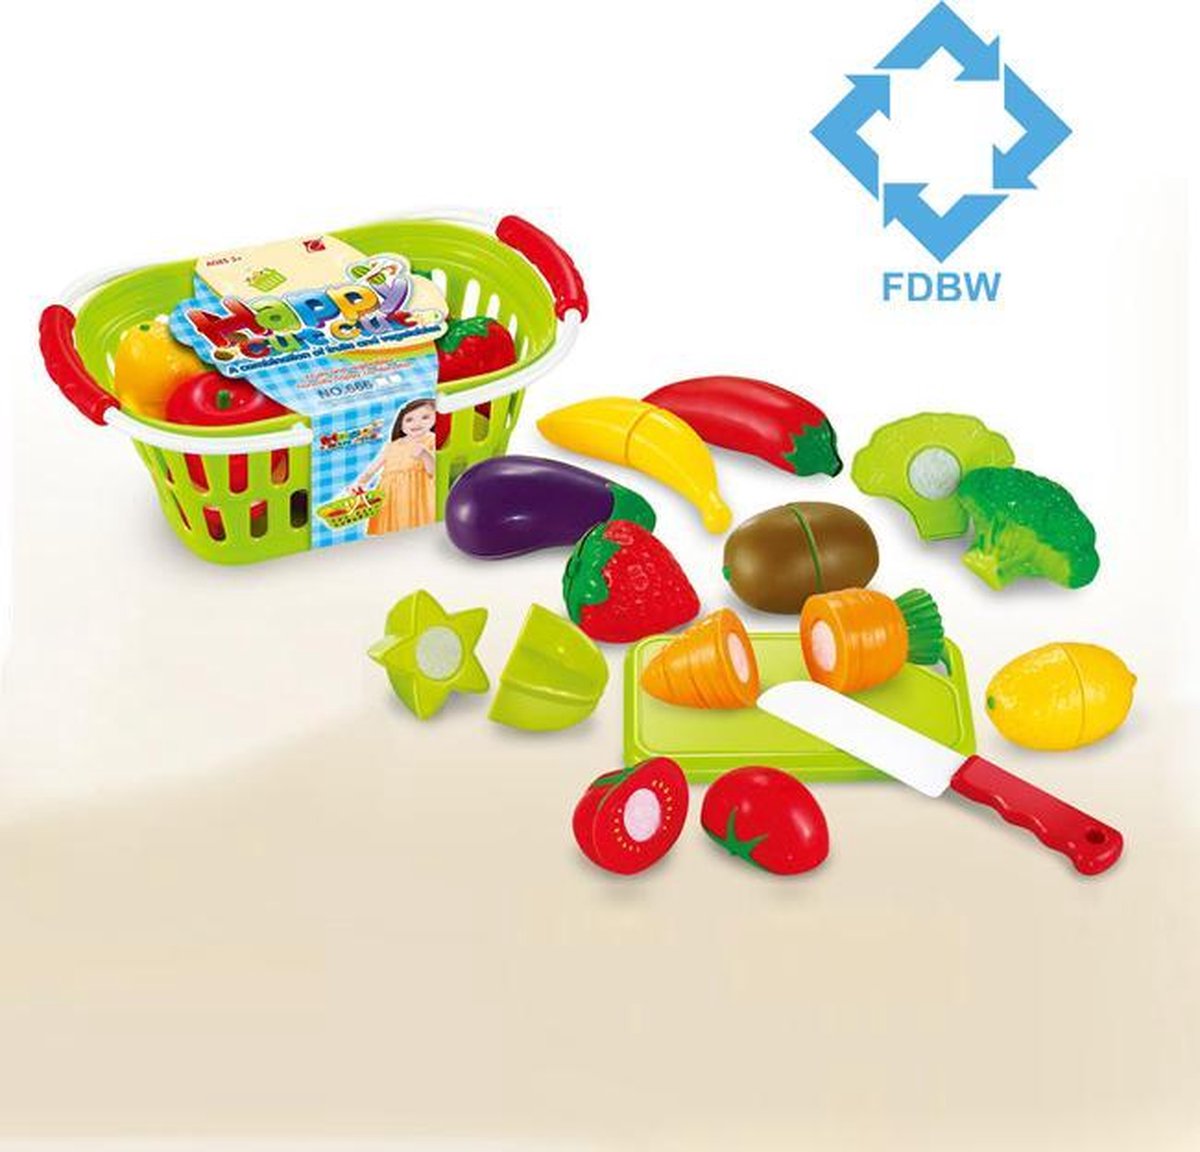 Keuken speelgoed - Snij Groente - Speelgoed eten accessoires - FDBW